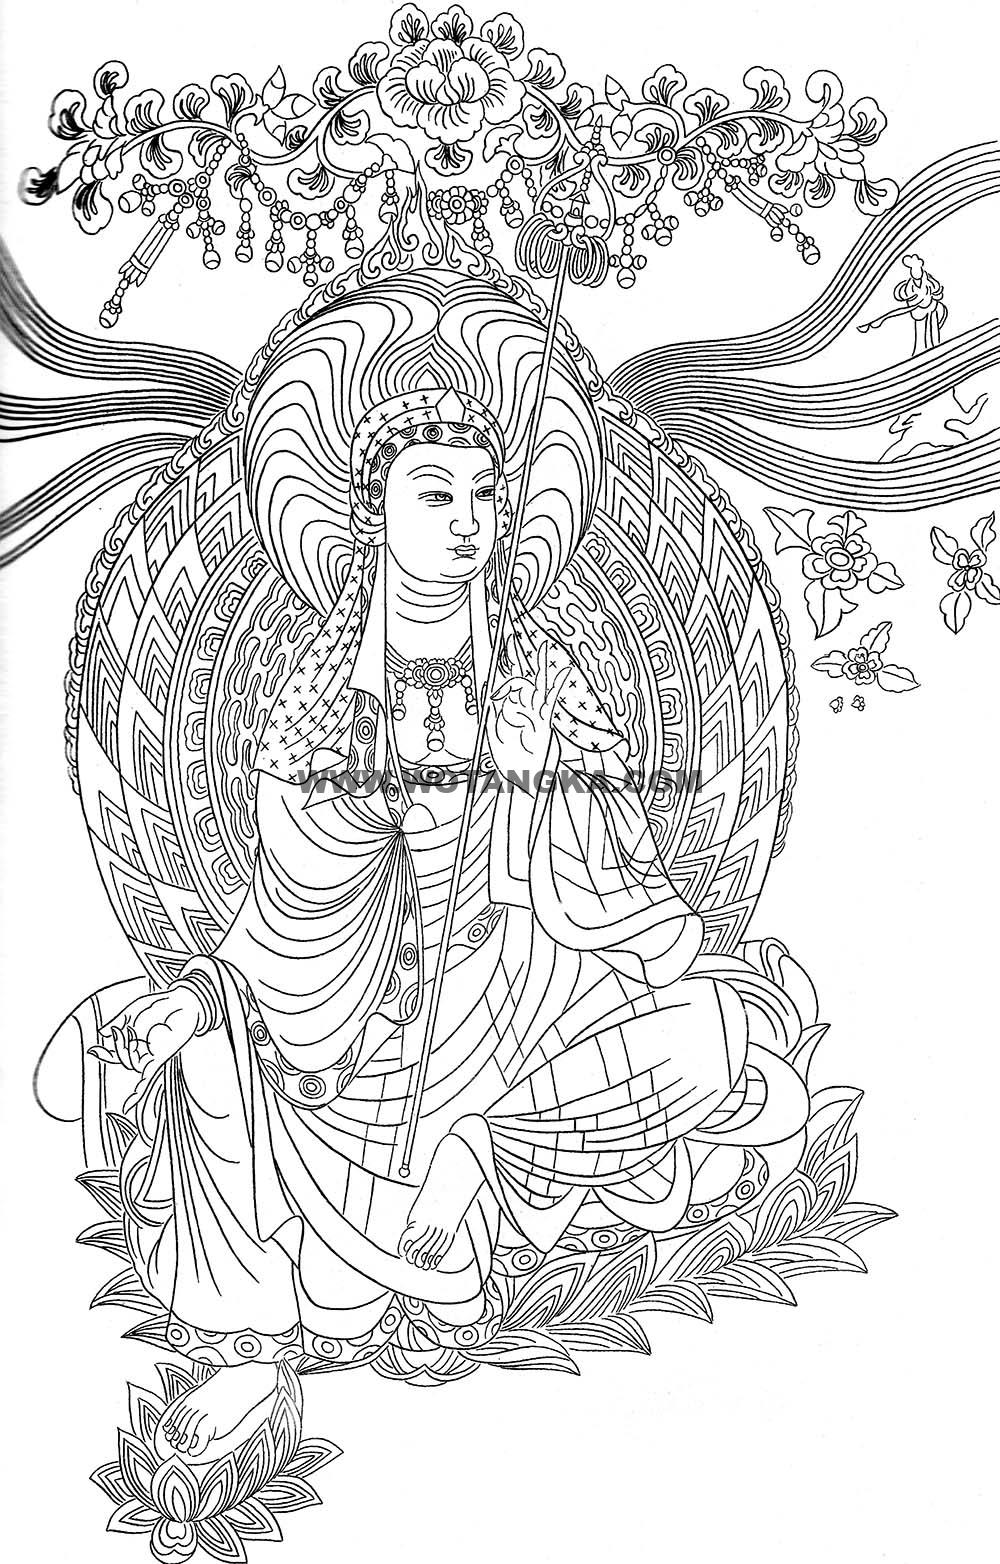 沃唐卡-唐卡白描线稿编号RD15162：地藏王菩萨虹光法相图